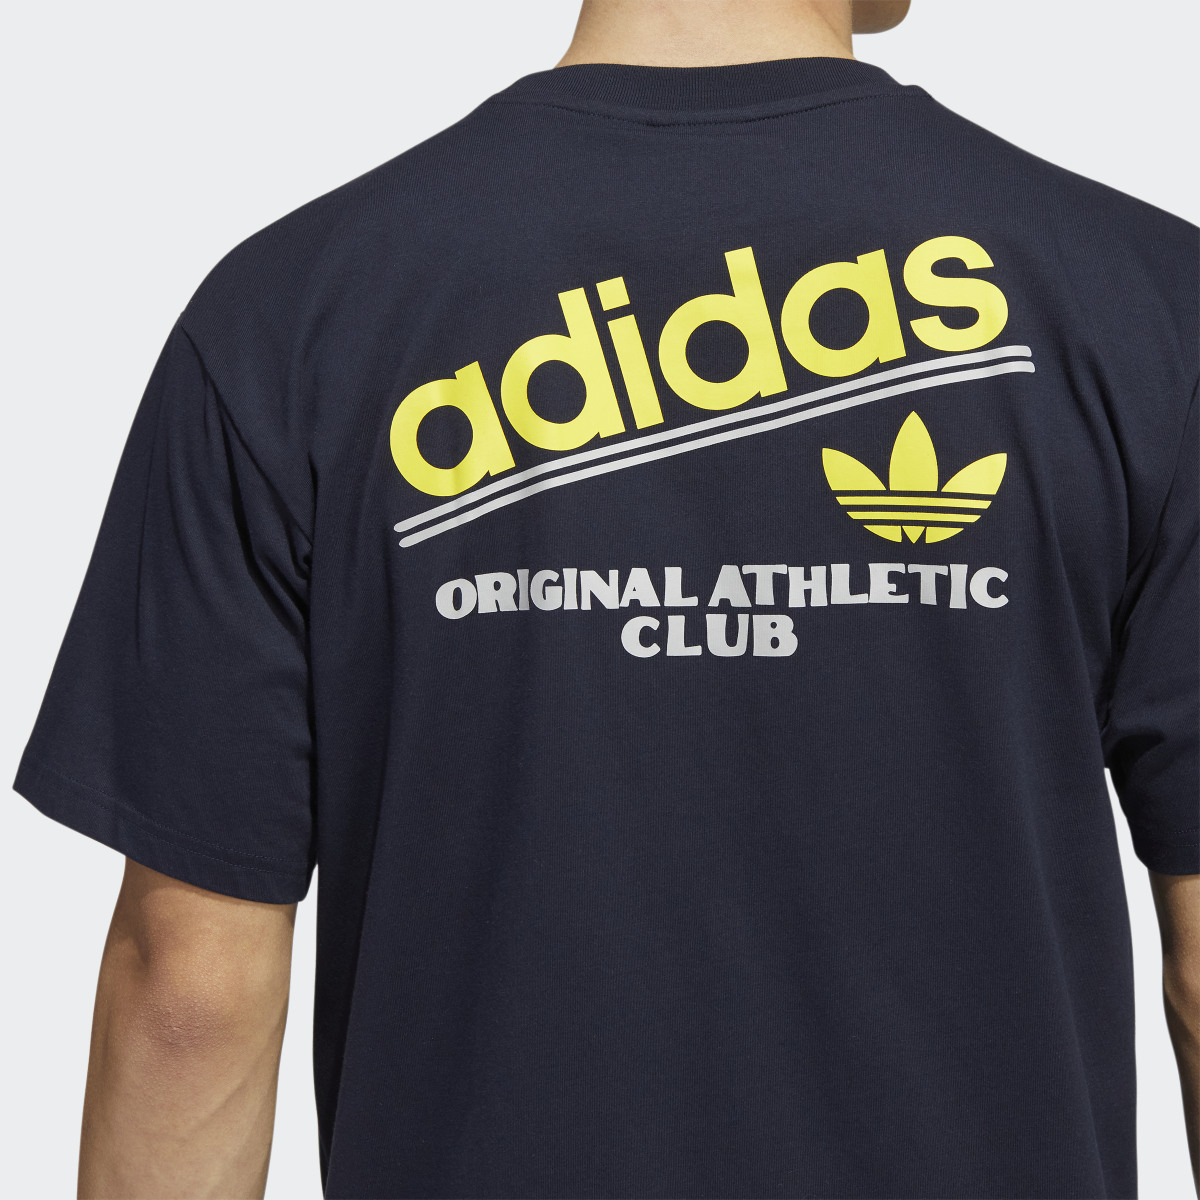 Adidas Athletic Club T-Shirt. 7